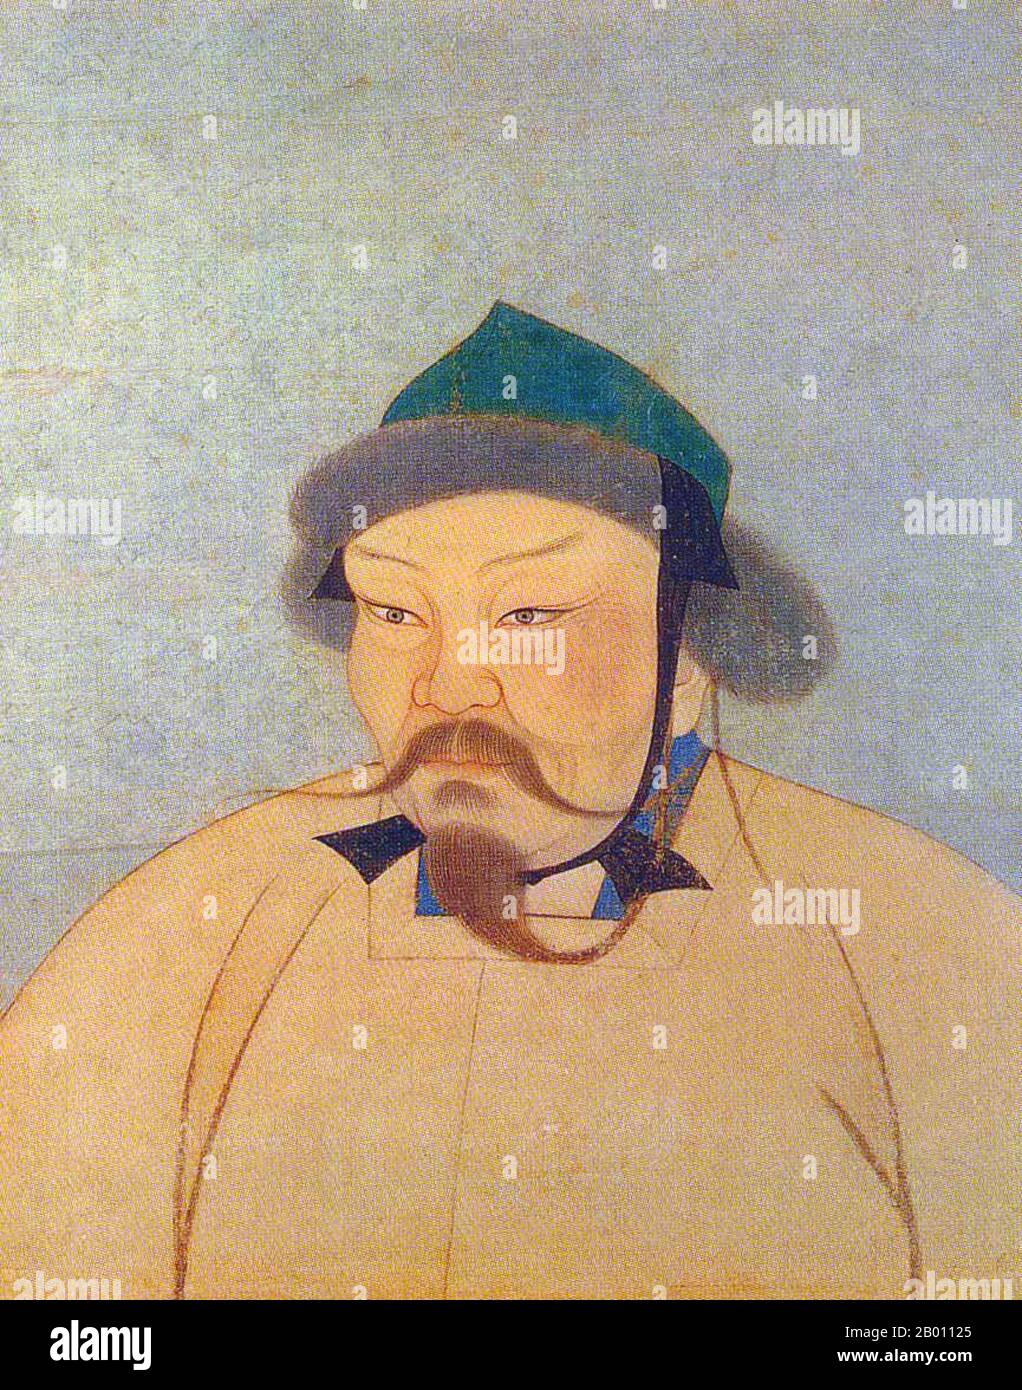 Mongolia: Ogedei Khan (r.1229-1241), II Khagan dell'Impero Mongolo. Inchiostro su ritratto album di seta, 14 ° secolo. Ogedei Khan (c.. 1186 – 11 dicembre 1241) fu il terzo figlio di Ghengis Khan e il secondo Grande Khan (Khagan) dell'Impero mongolo succedendo al padre. Continuò l'espansione dell'impero che suo padre aveva iniziato, e fu una figura mondiale quando l'Impero mongolo raggiunse la sua estensione più estrema a ovest e a sud durante le invasioni dell'Europa e dell'Asia. Come tutti i figli primari di Gengis, ha partecipato ampiamente alle conquiste in Cina, Iran e Asia centrale. Foto Stock